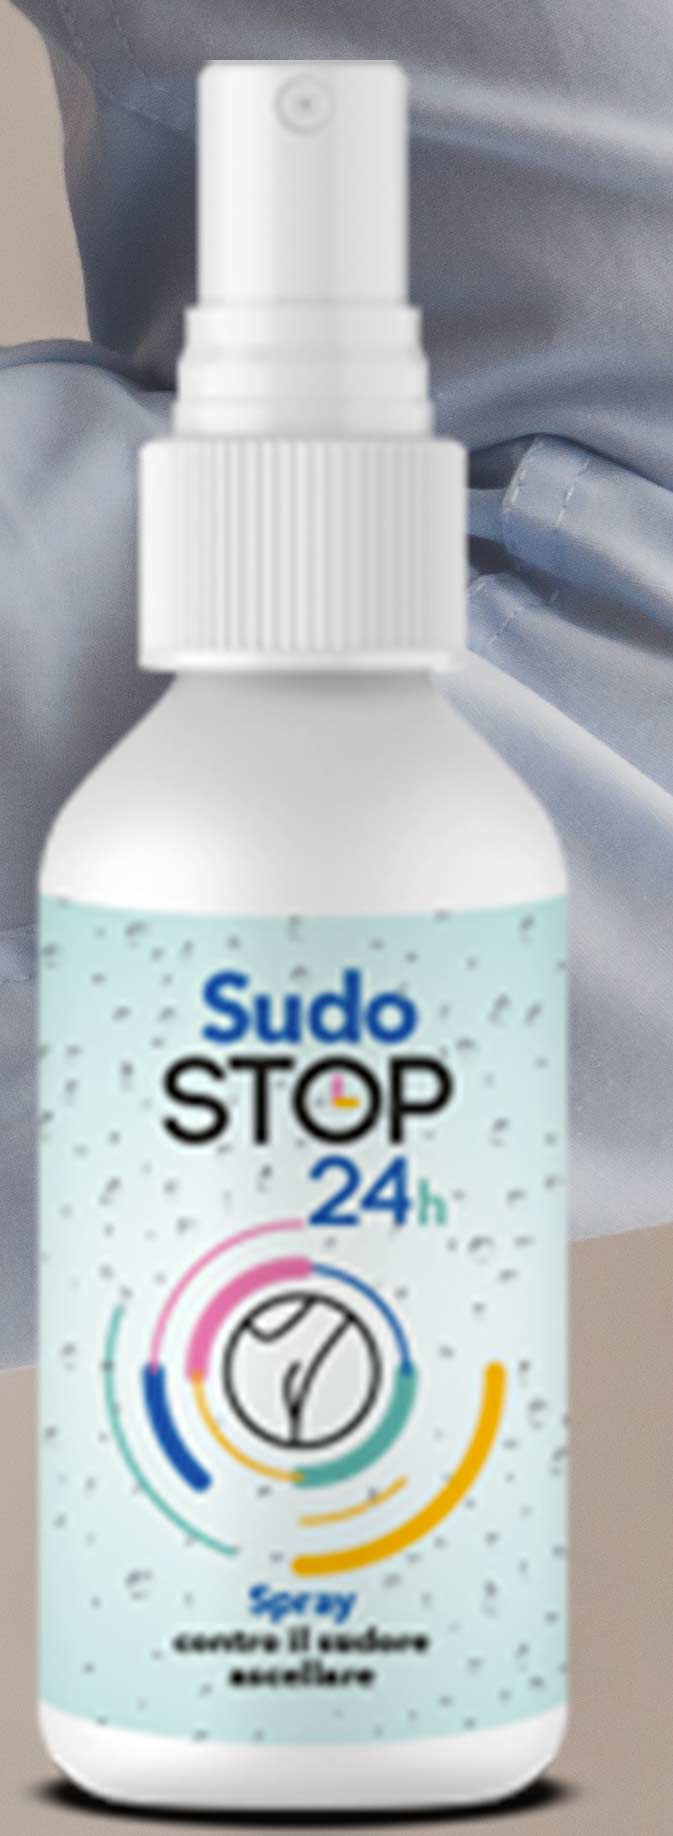 Spray per smettere di sudare Sudo Stop 24